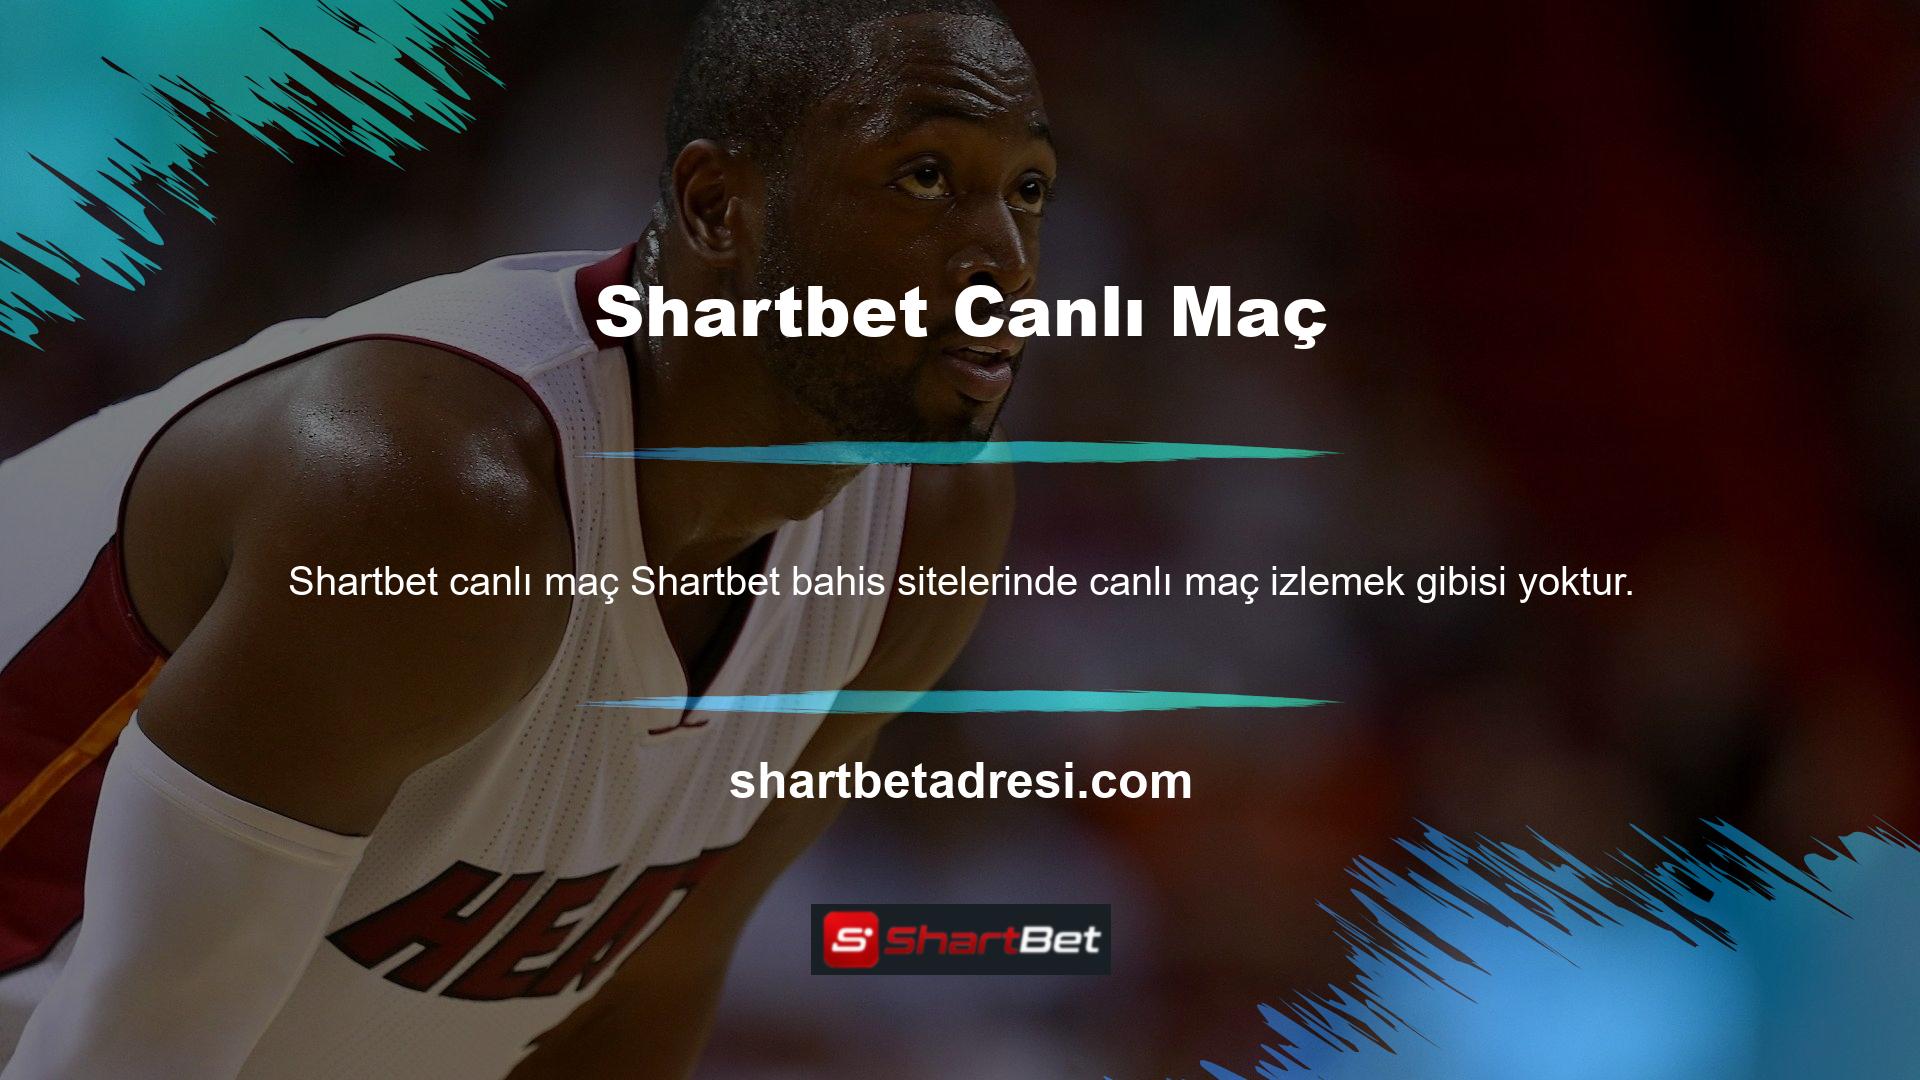 Shartbet TV, çok yüksek spor yayın standartlarında maçları izlemeye yönelik bir bahis sitesi uzantı platformudur